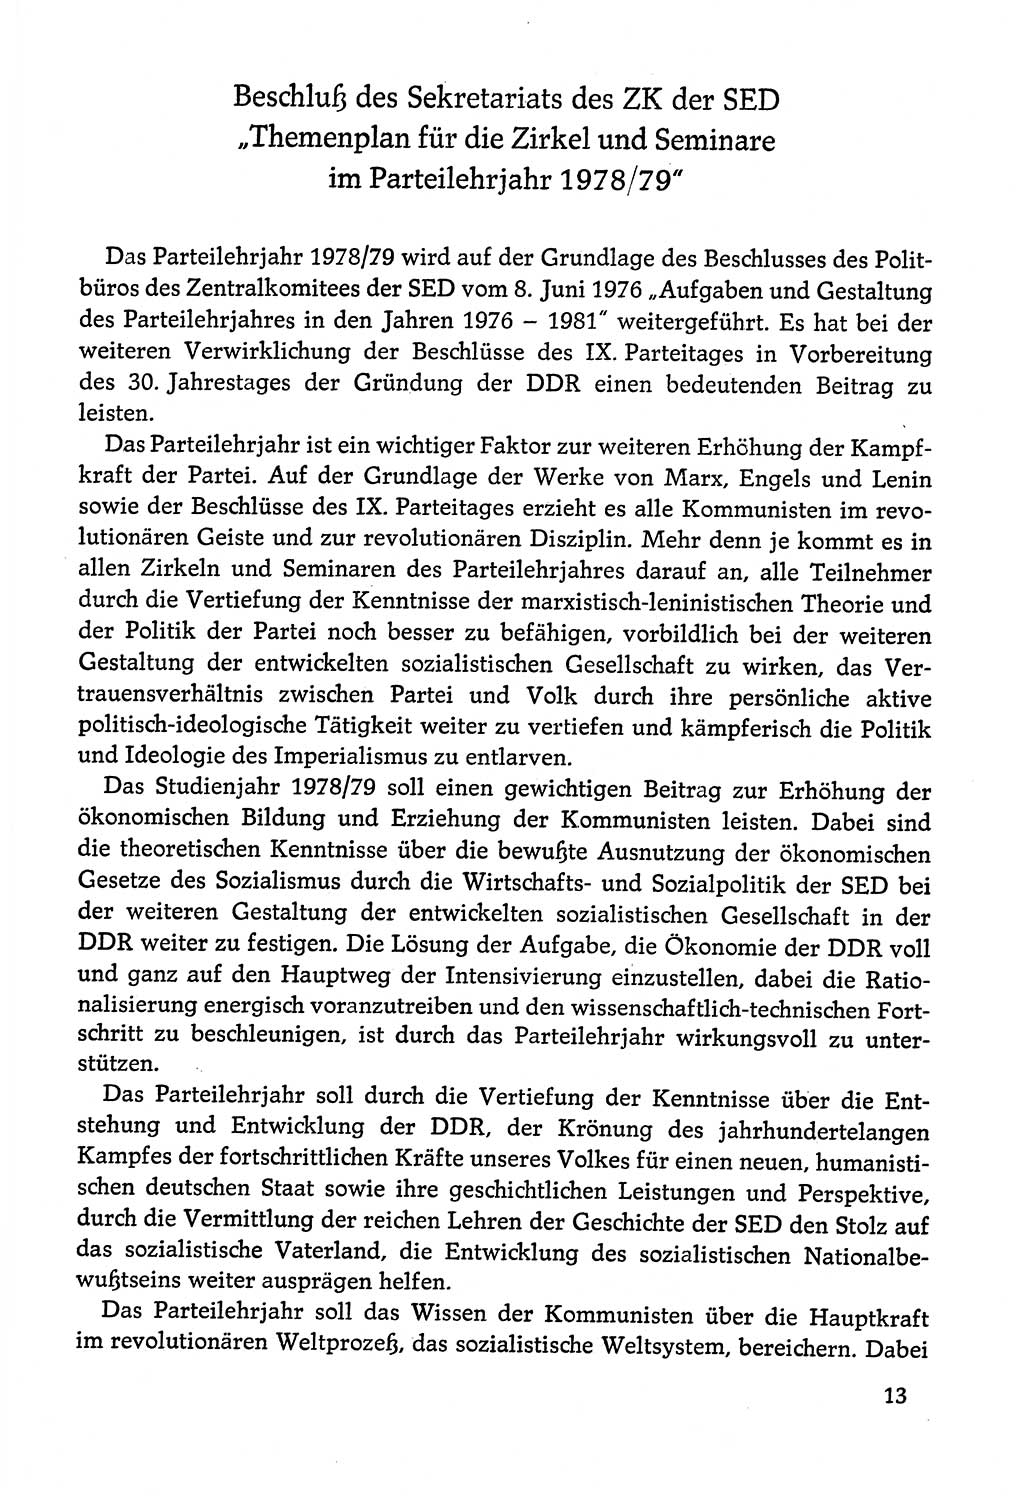 Dokumente der Sozialistischen Einheitspartei Deutschlands (SED) [Deutsche Demokratische Republik (DDR)] 1978-1979, Seite 13 (Dok. SED DDR 1978-1979, S. 13)